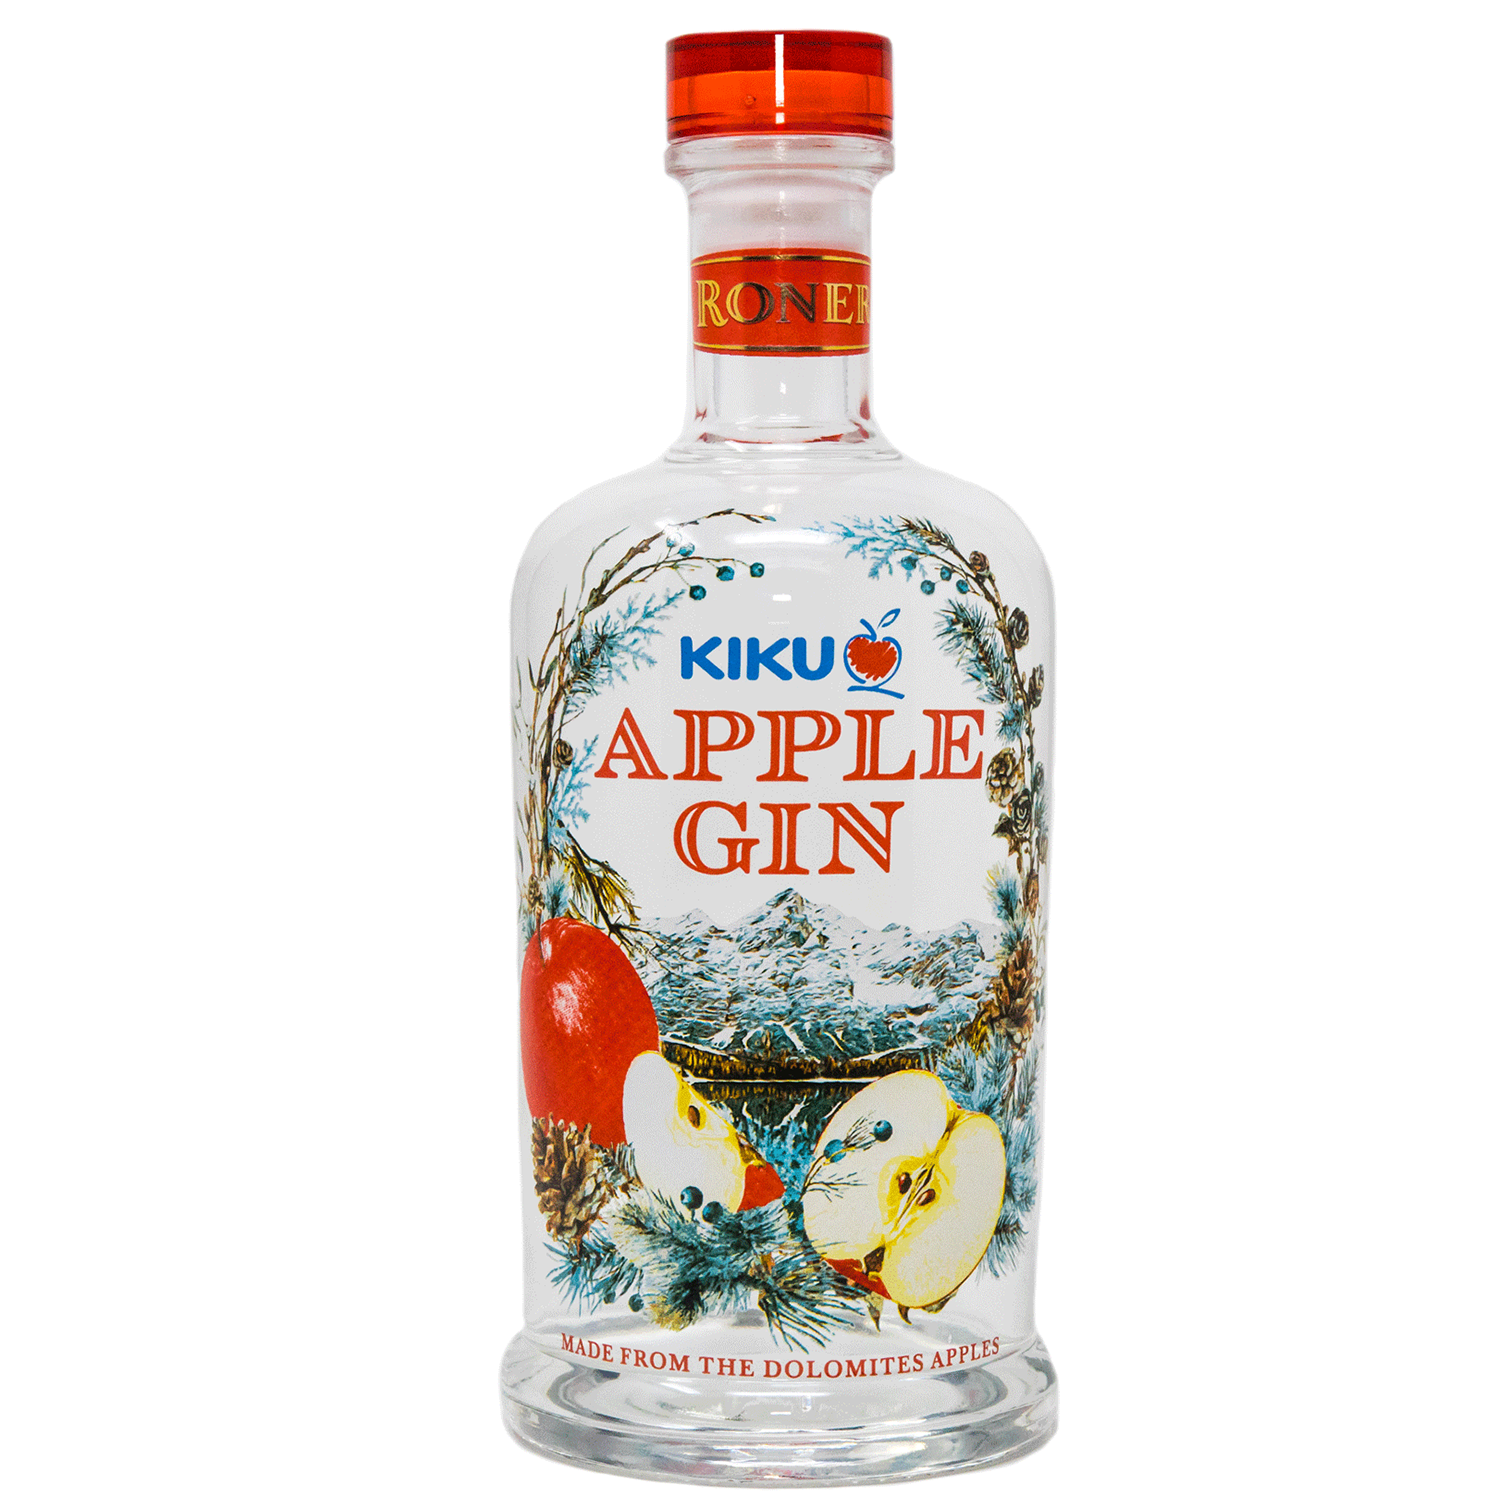 Kiku Apple Gin by Roner  in 500ml bottle